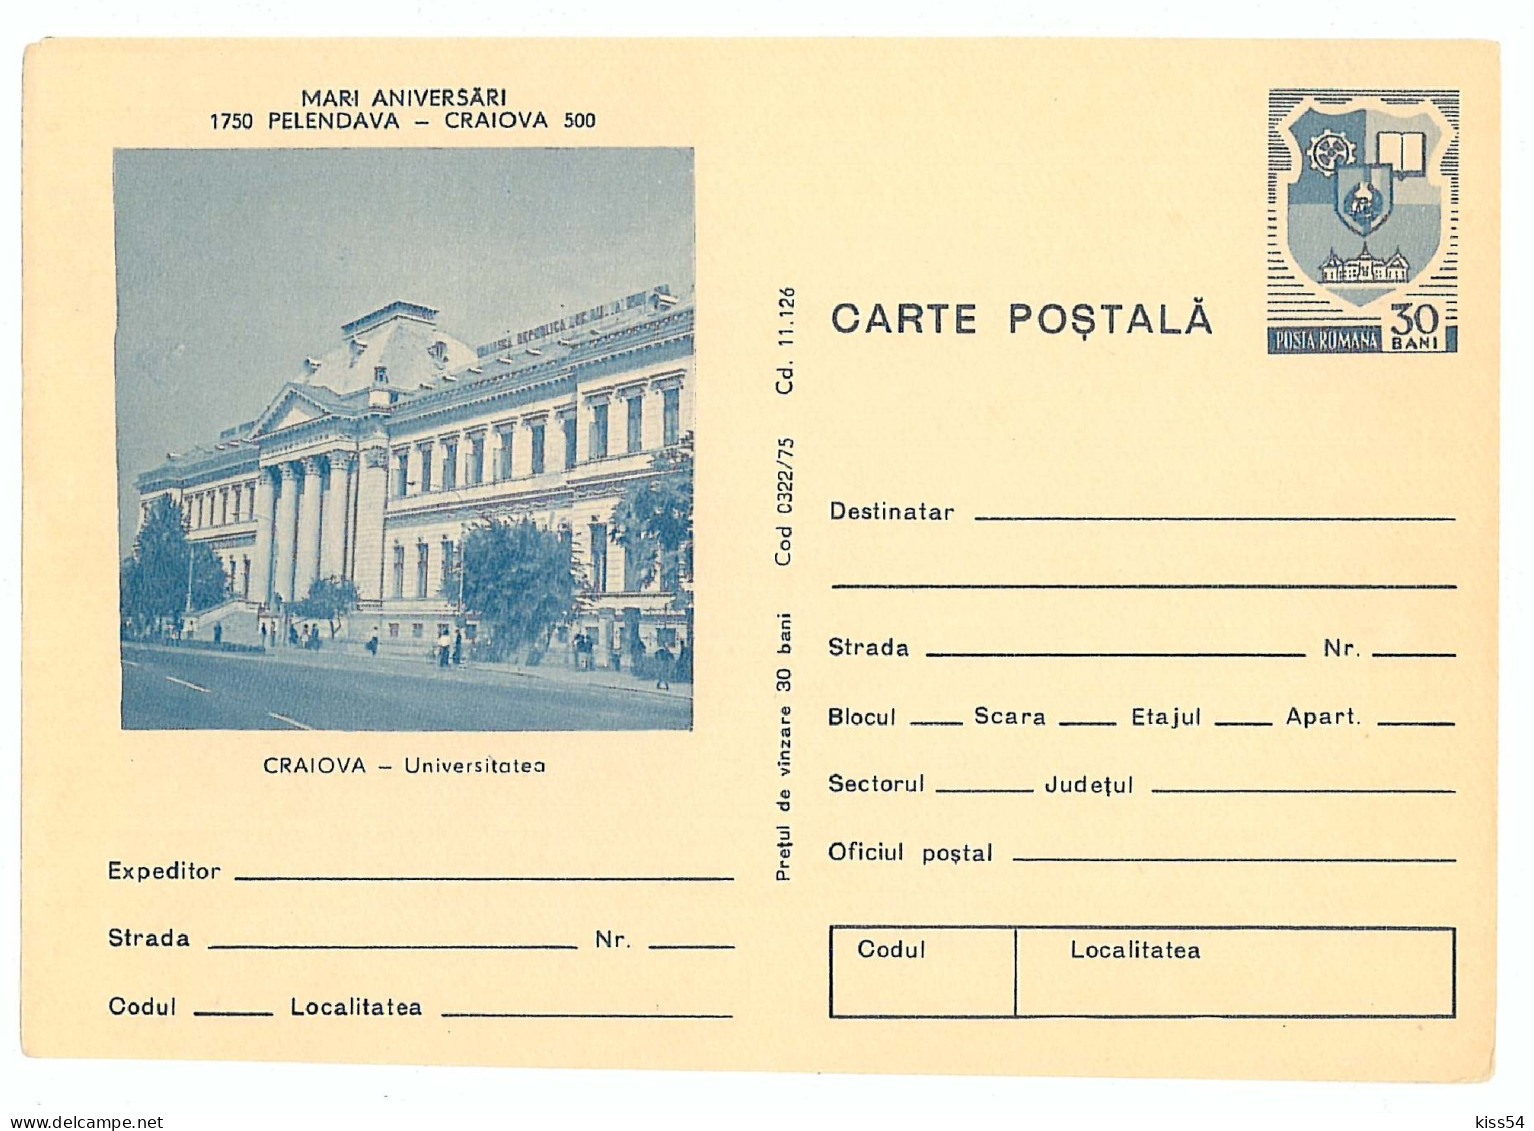 IP 75 - 322 CRAIOVA, University - Stationery - Unused - 1975 - Interi Postali